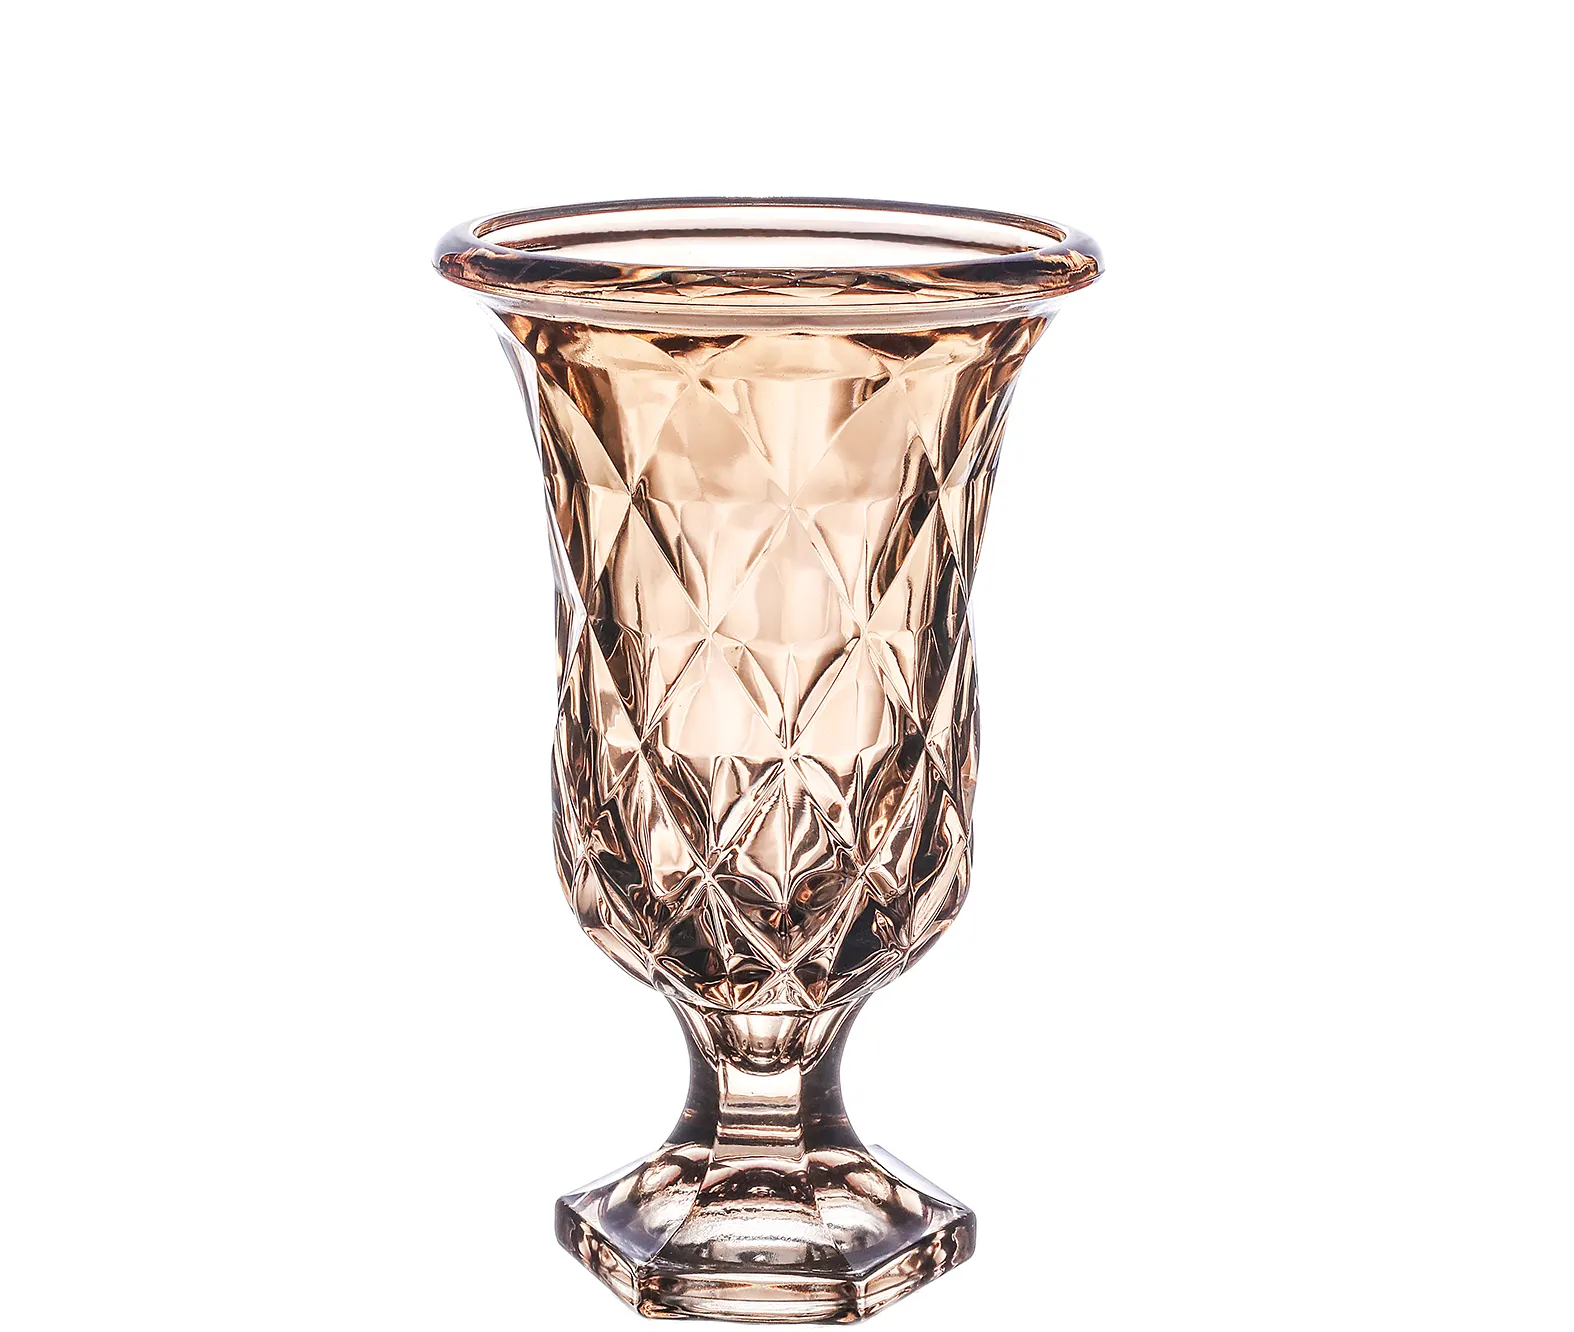 Tisch vase Blume Luxus Blumenvase Kristall Moderne Blumenvasen aus klarem Zylinder glas für die Inneneinrichtung